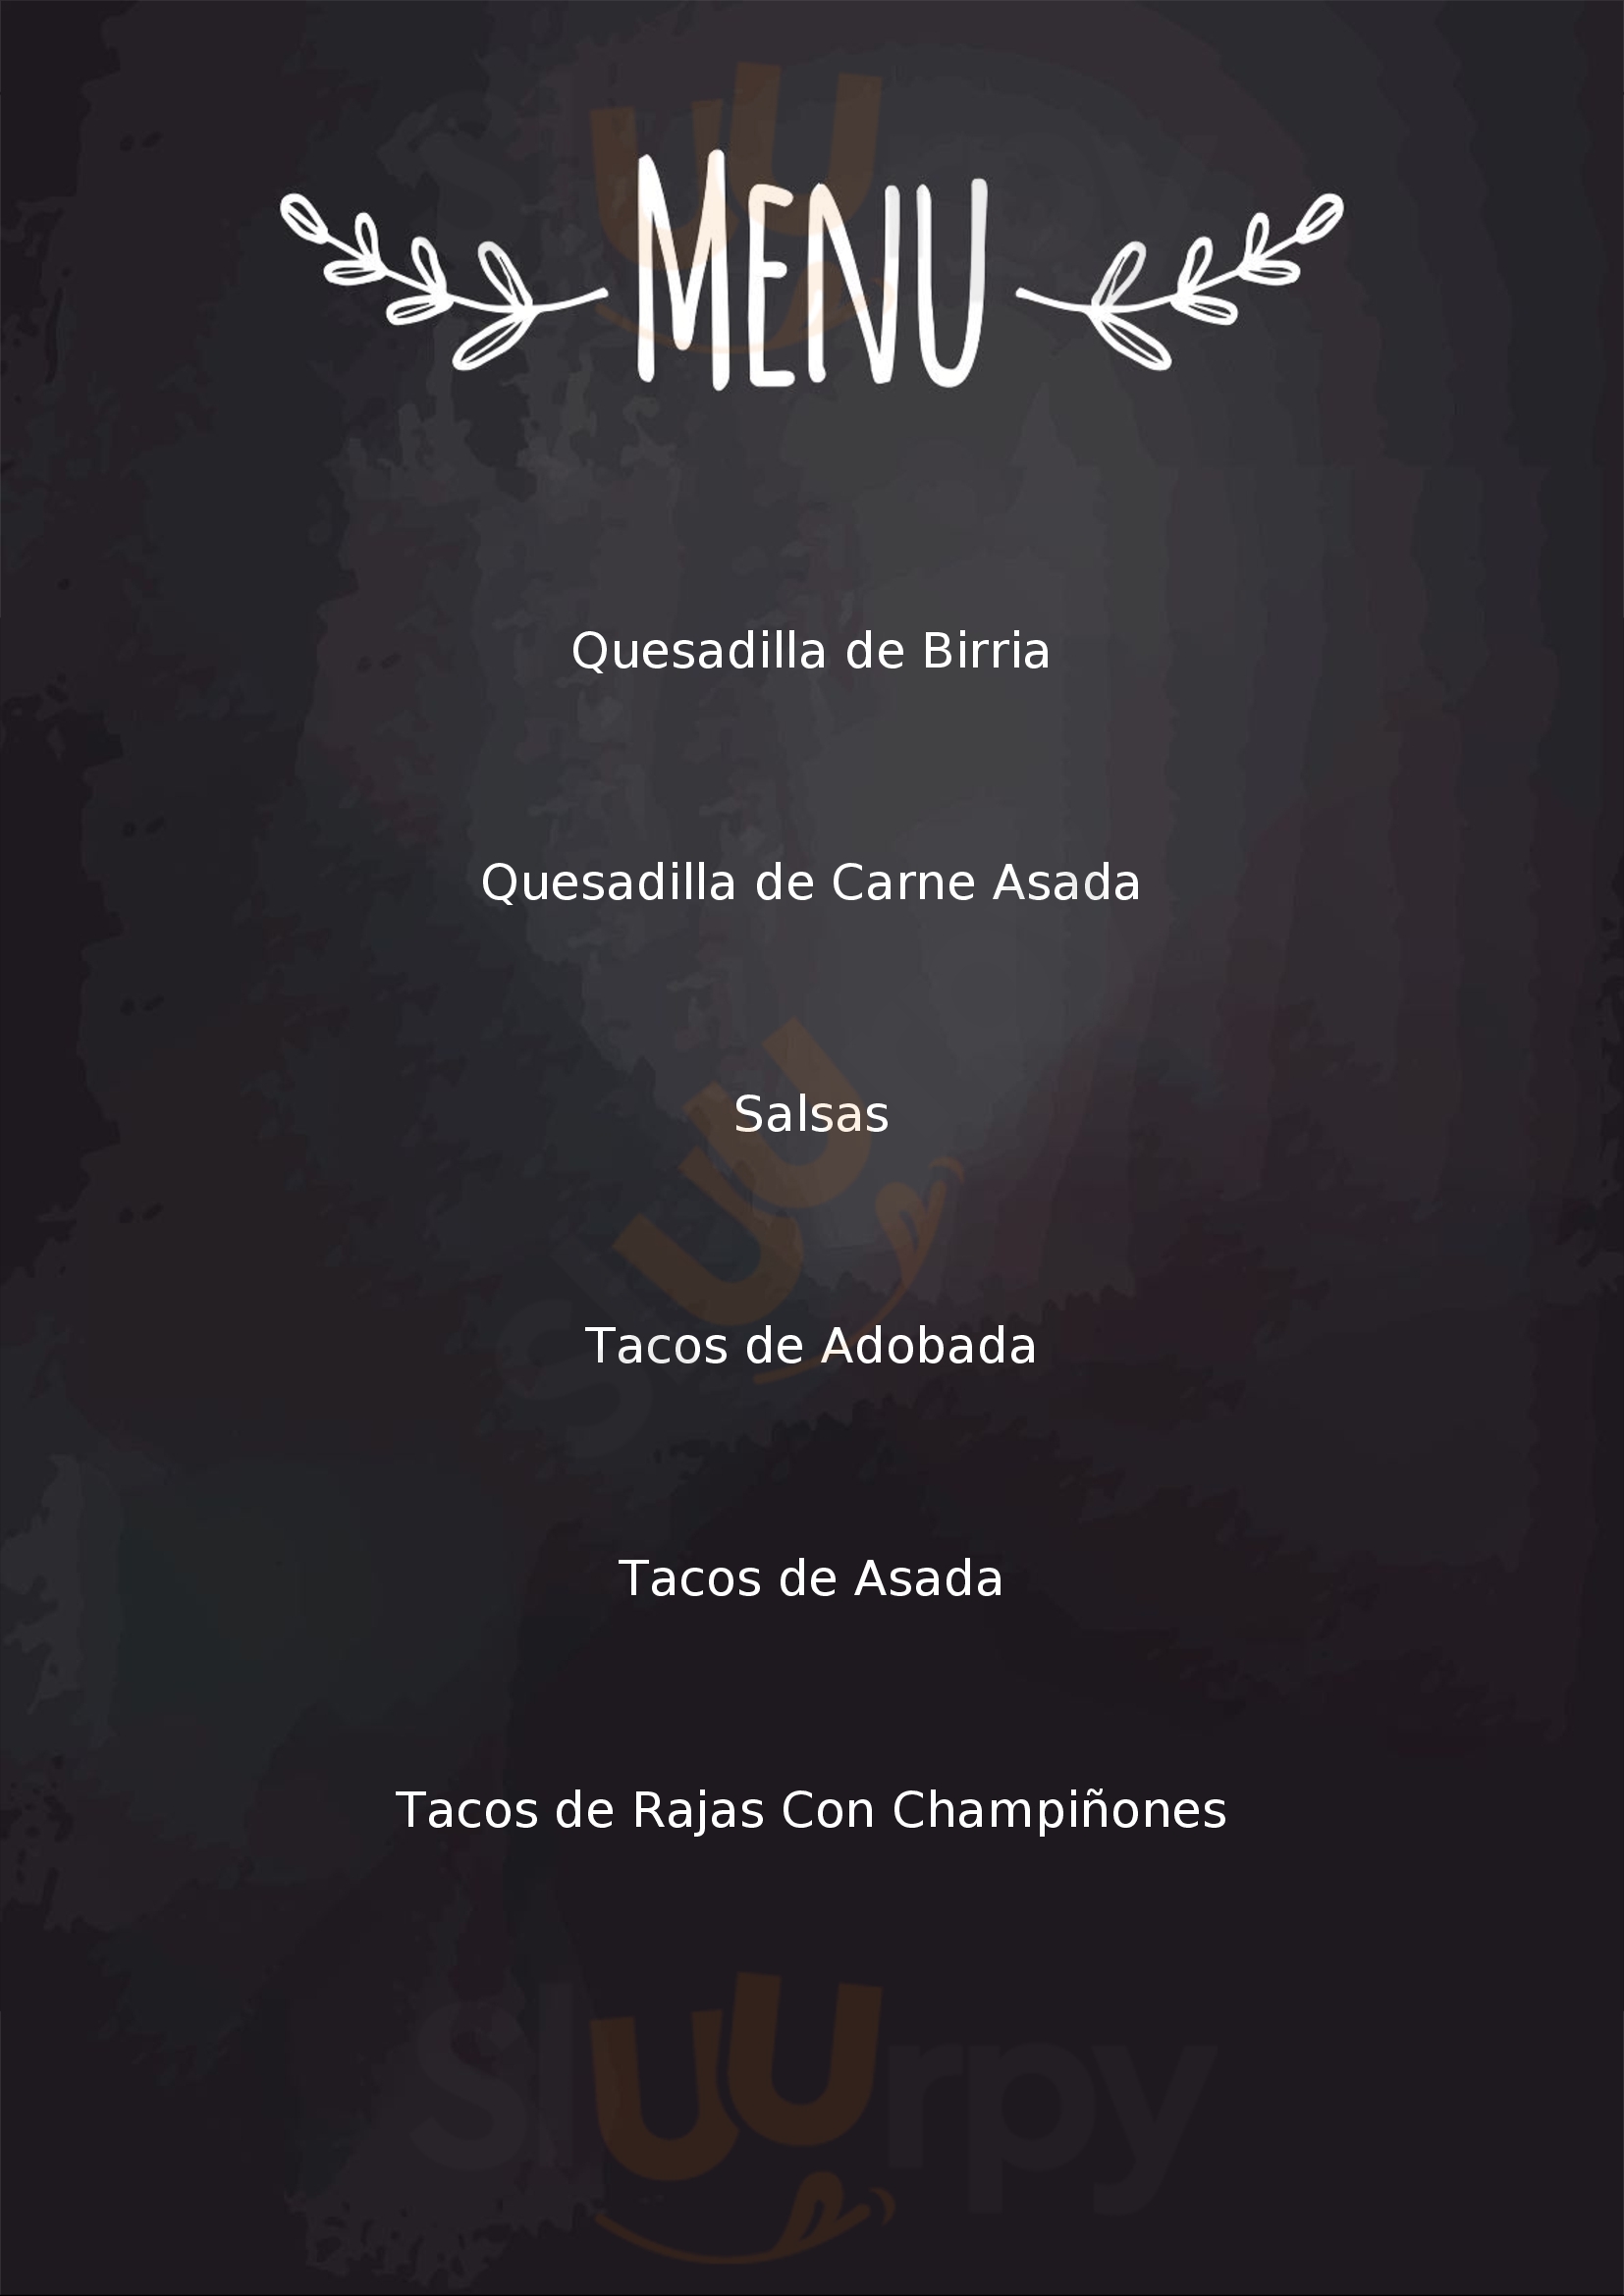 Tacos El Candora Piña Puerto Vallarta Menu - 1